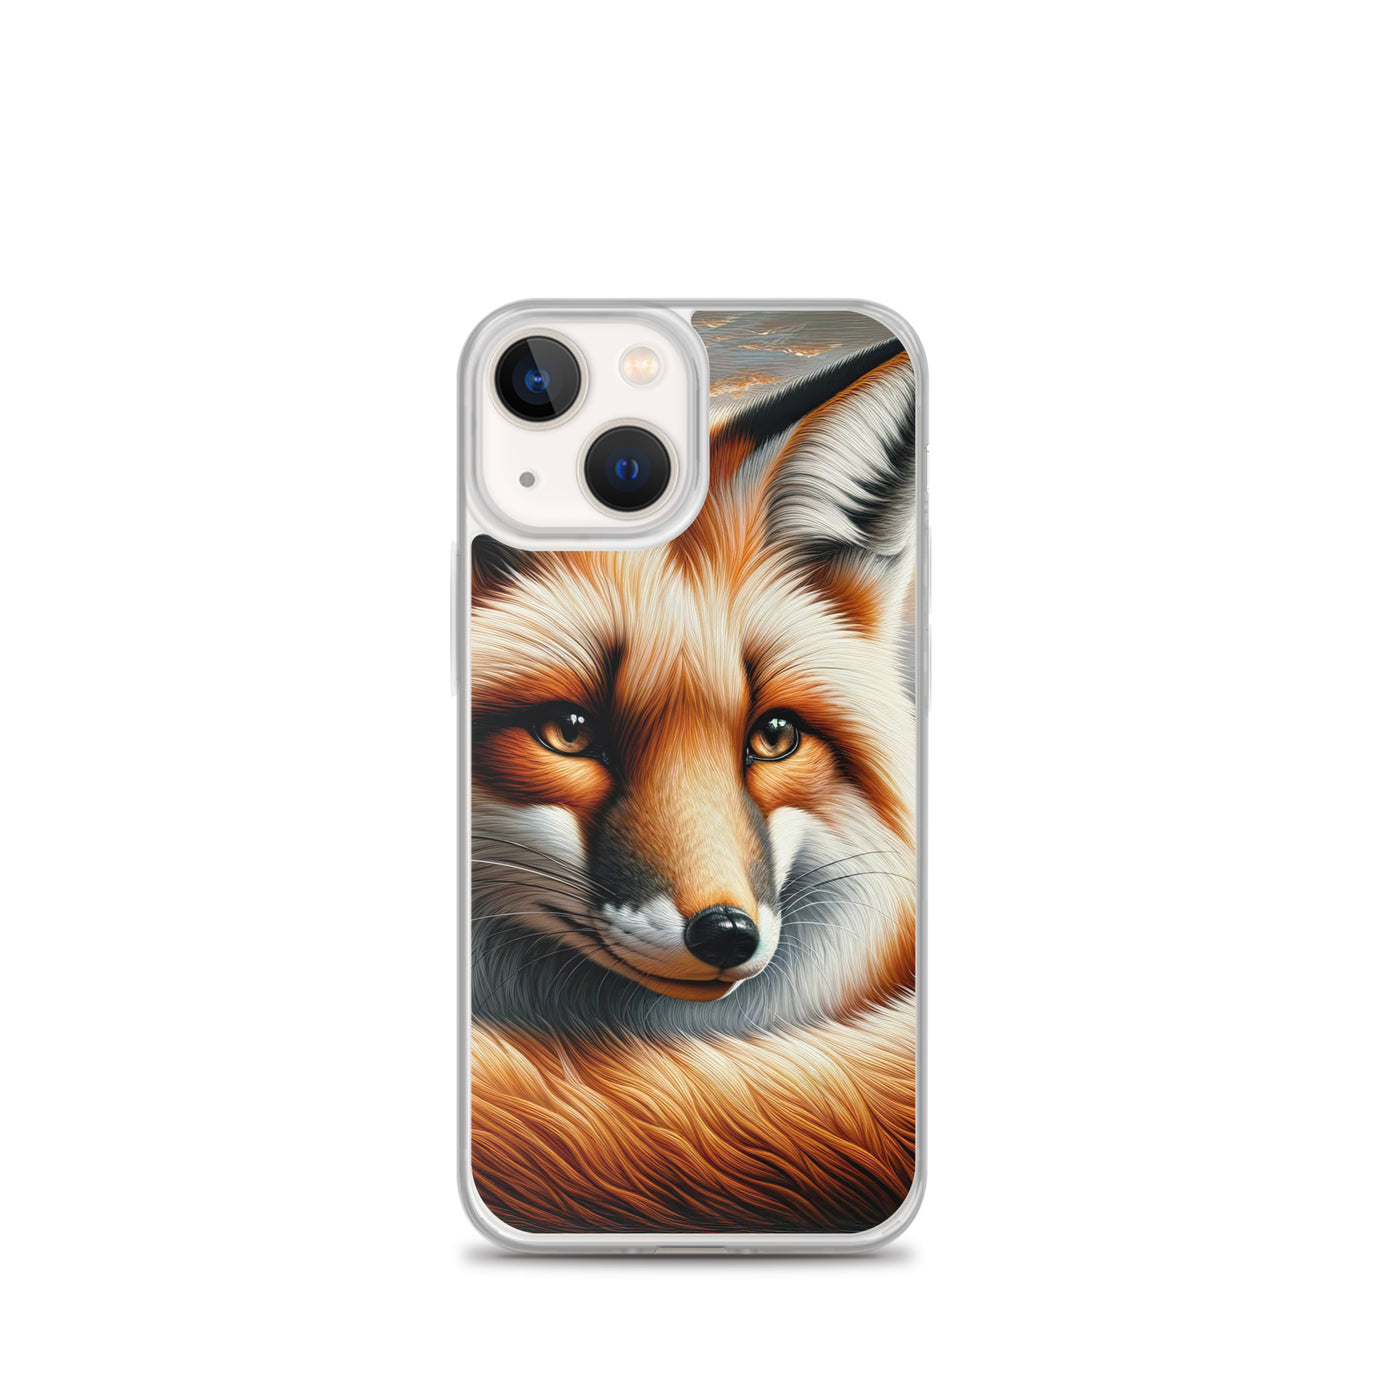 Ölgemälde eines nachdenklichen Fuchses mit weisem Blick - iPhone Schutzhülle (durchsichtig) camping xxx yyy zzz iPhone 13 mini